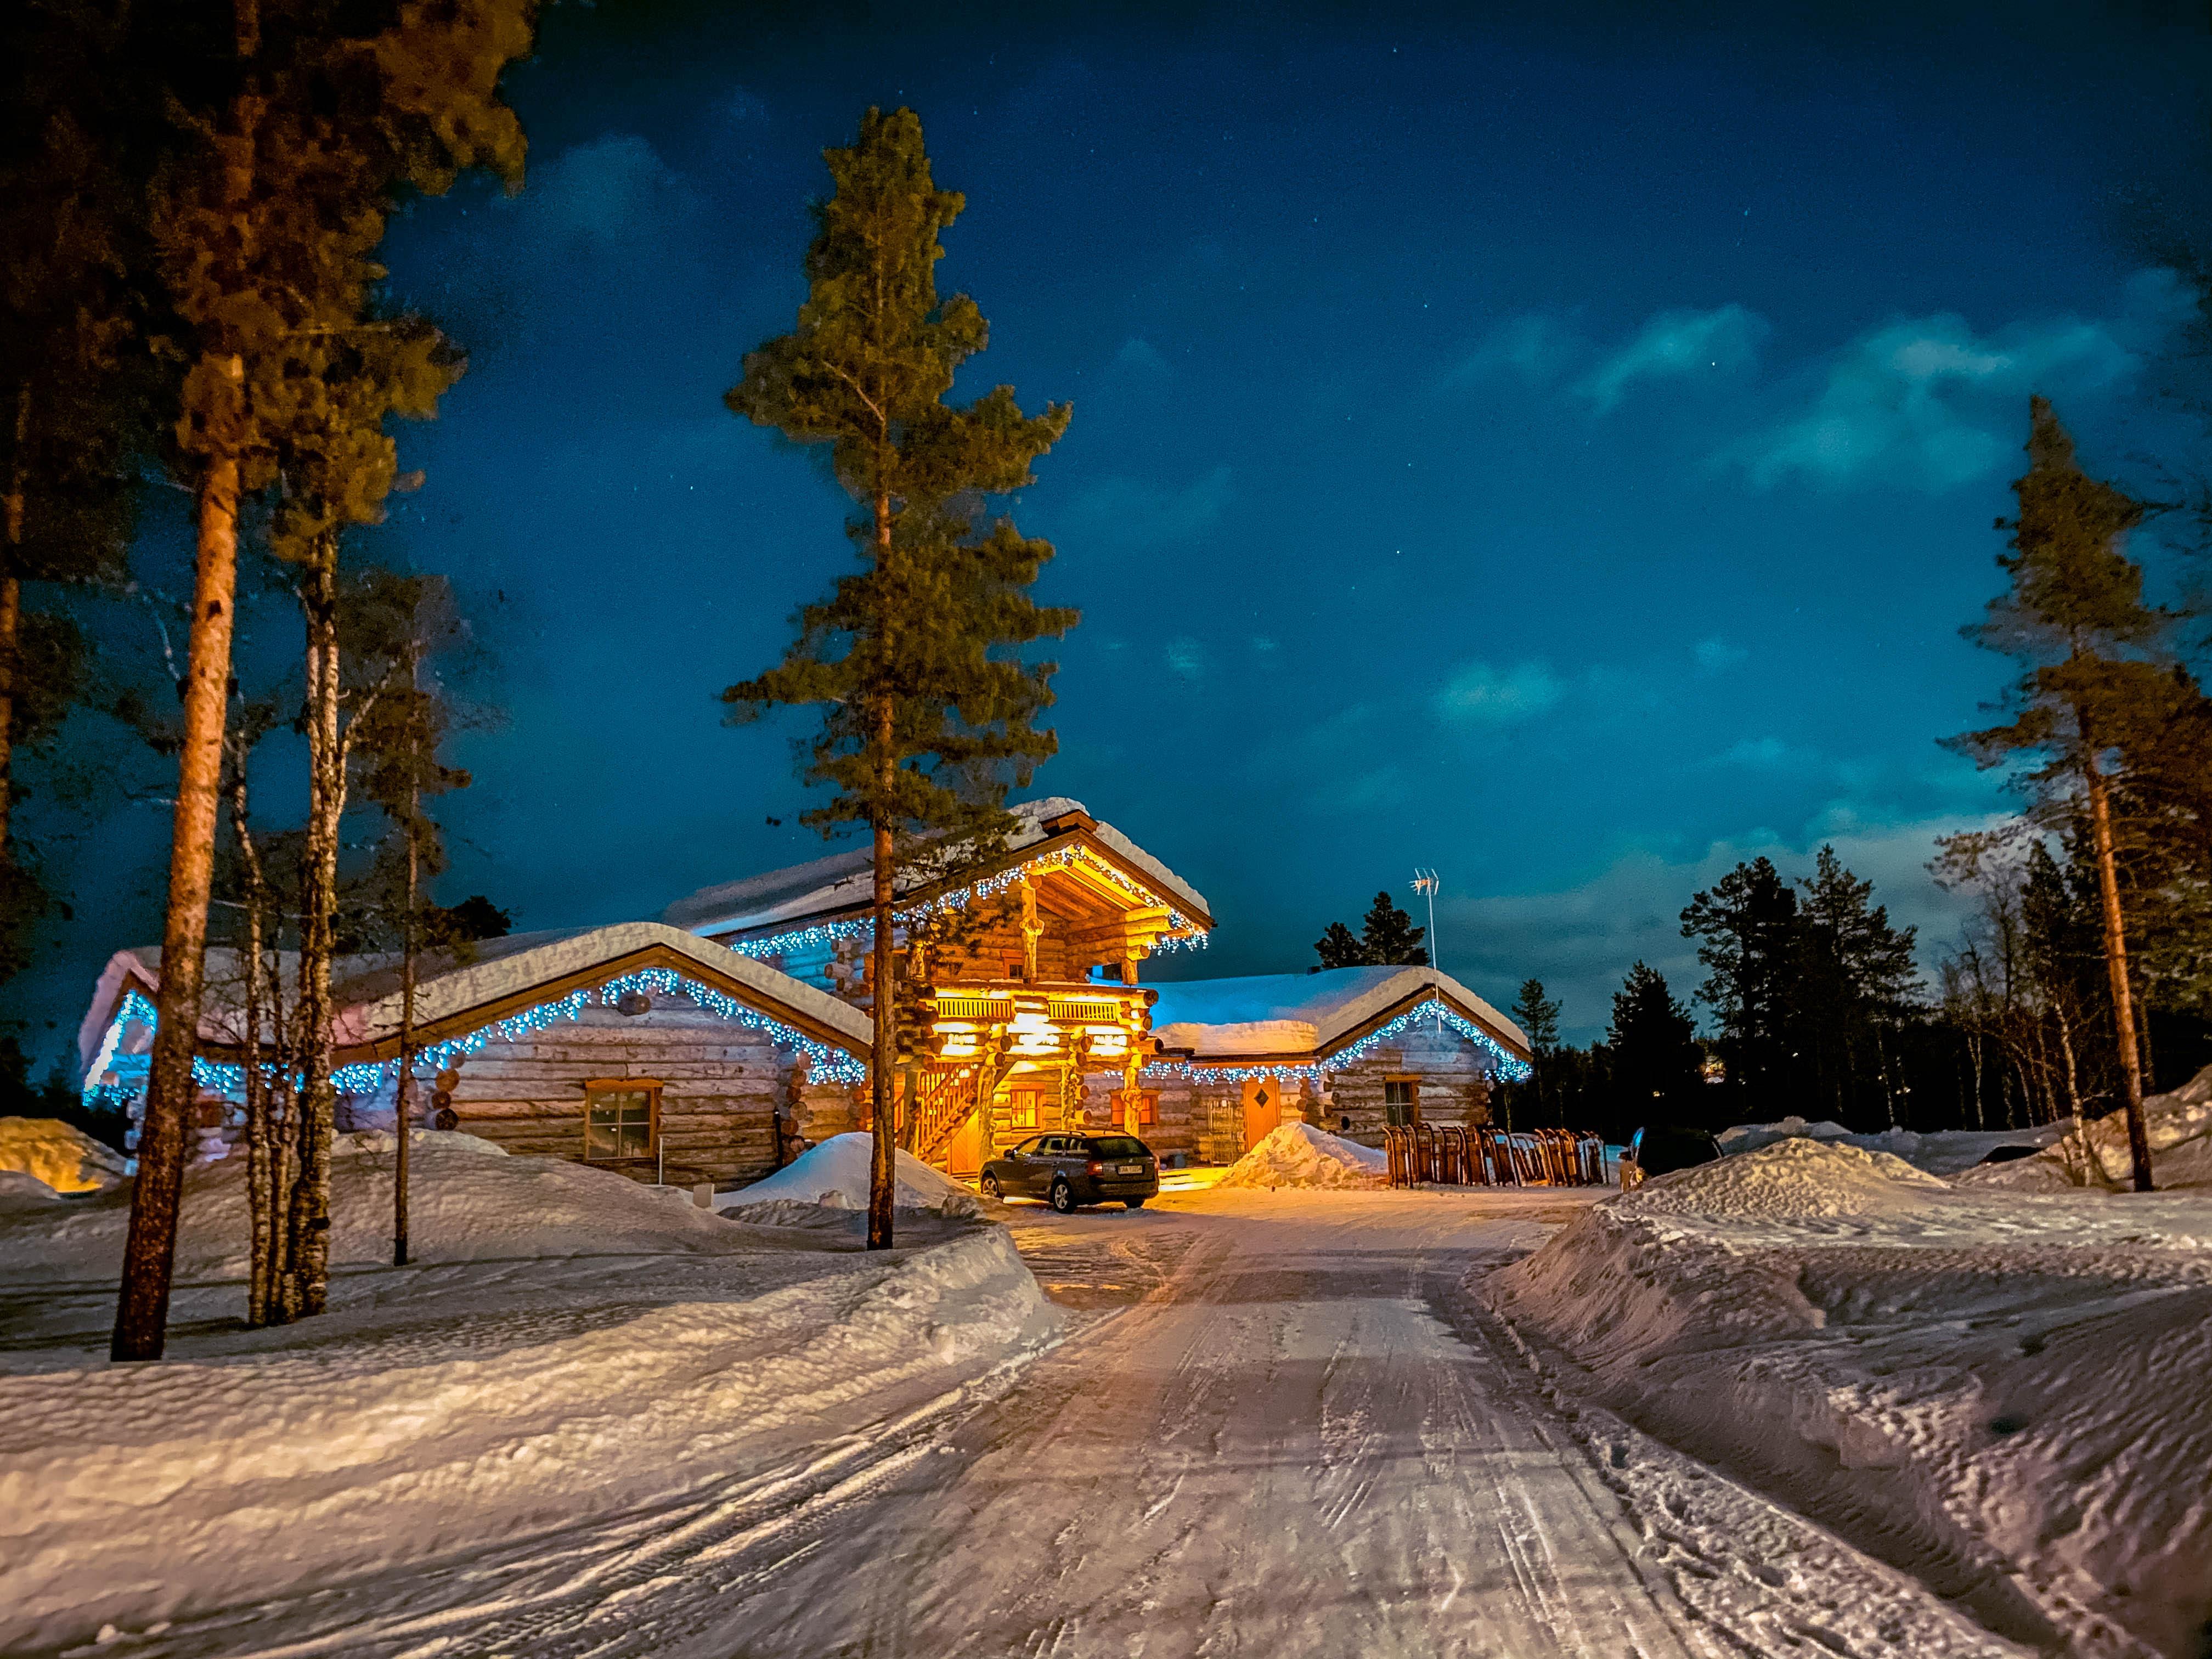 Kakslauttanen Arctic Resort during the night in winter